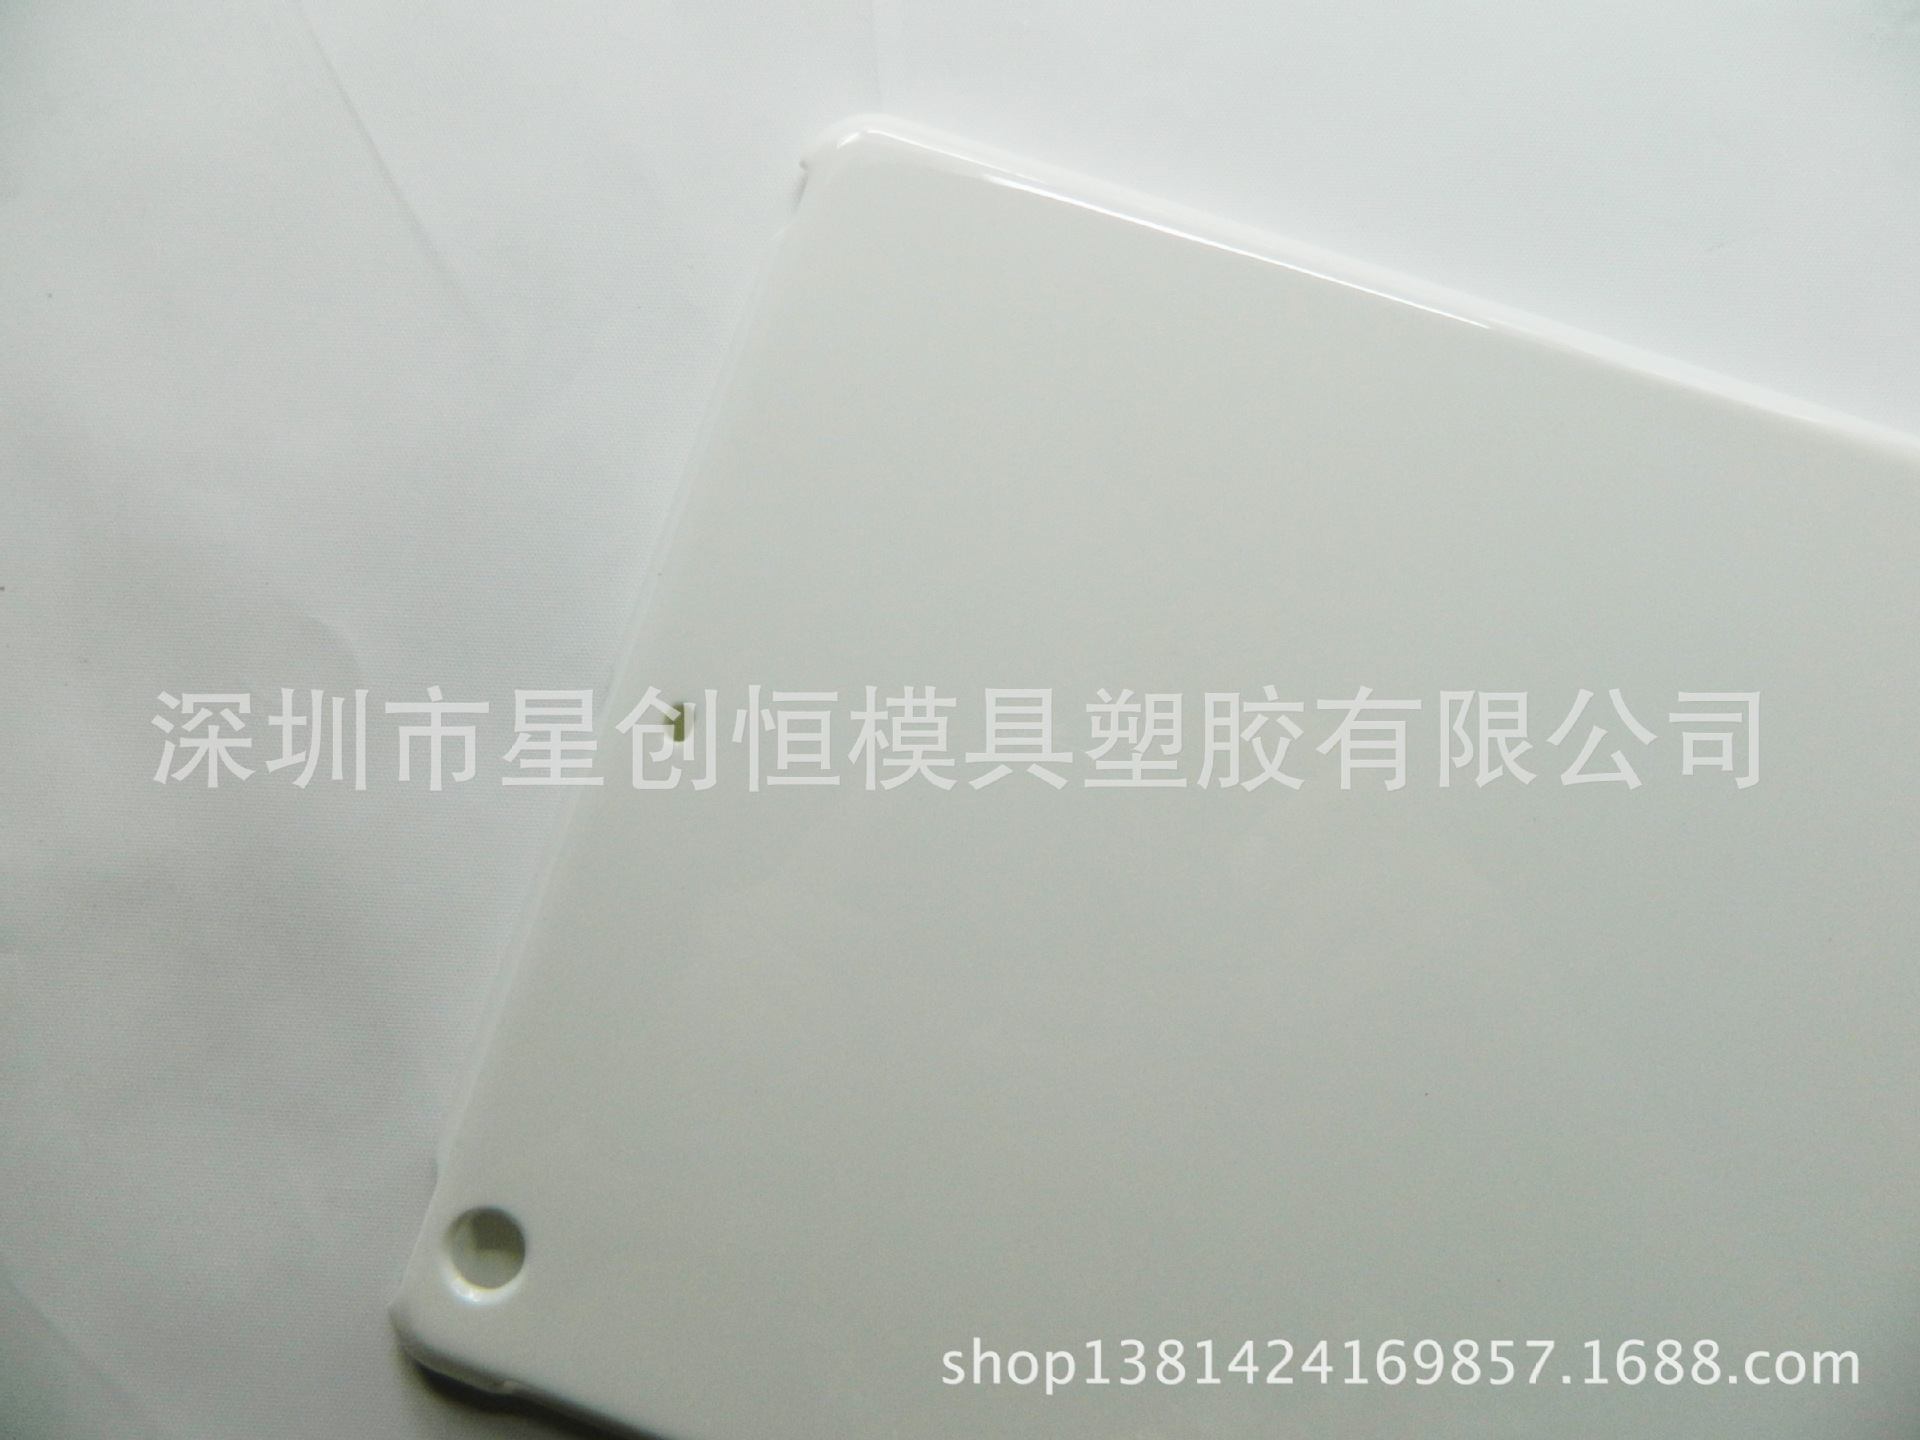 厂家直销供应ipad mini保护壳 ipad单底保护壳 ipad保护壳塑料